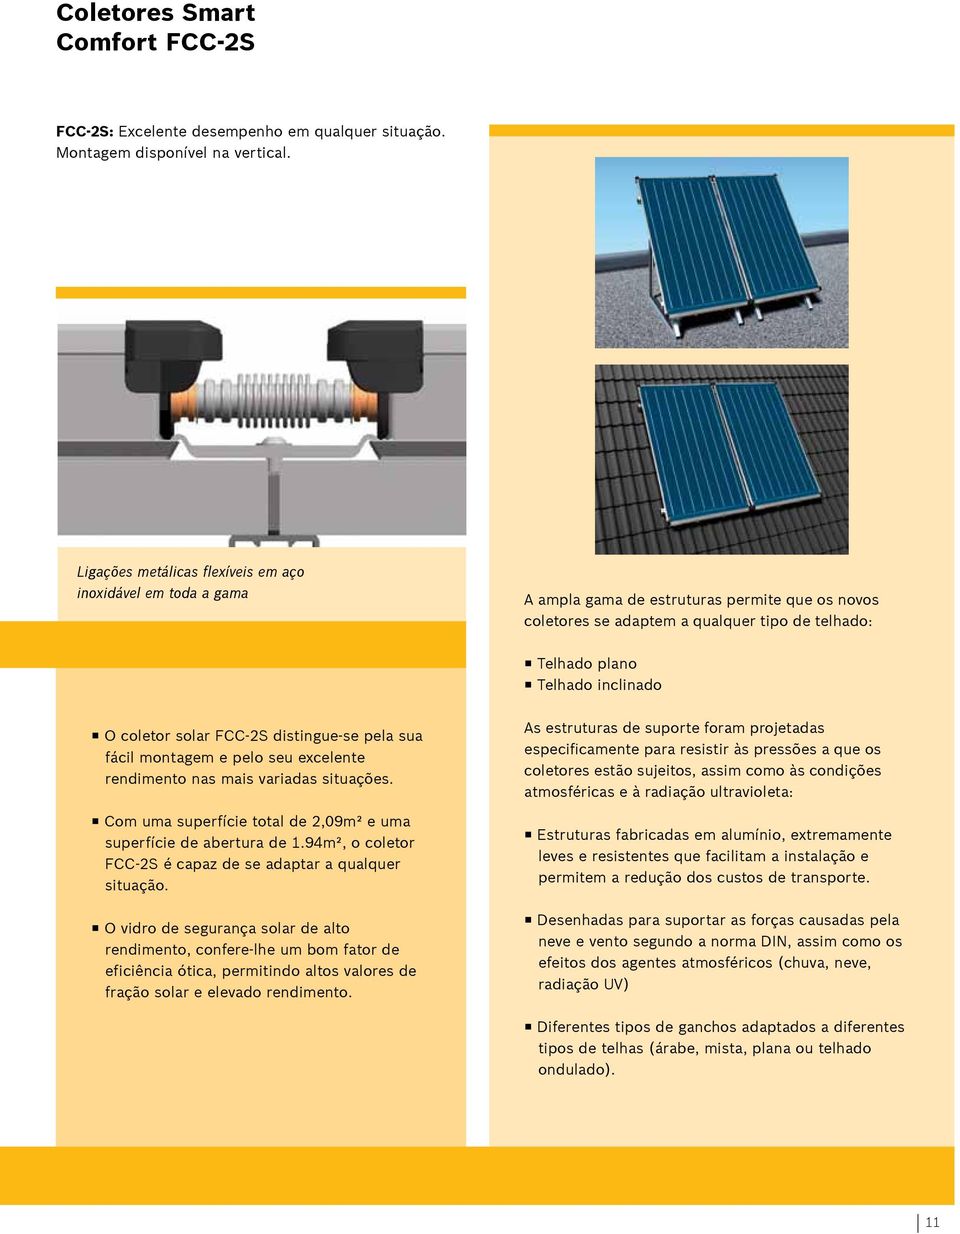 coletor solar FCC-2S distingue-se pela sua fácil montagem e pelo seu excelente rendimento nas mais variadas situações. Com uma superfície total de 2,09m² e uma superfície de abertura de 1.